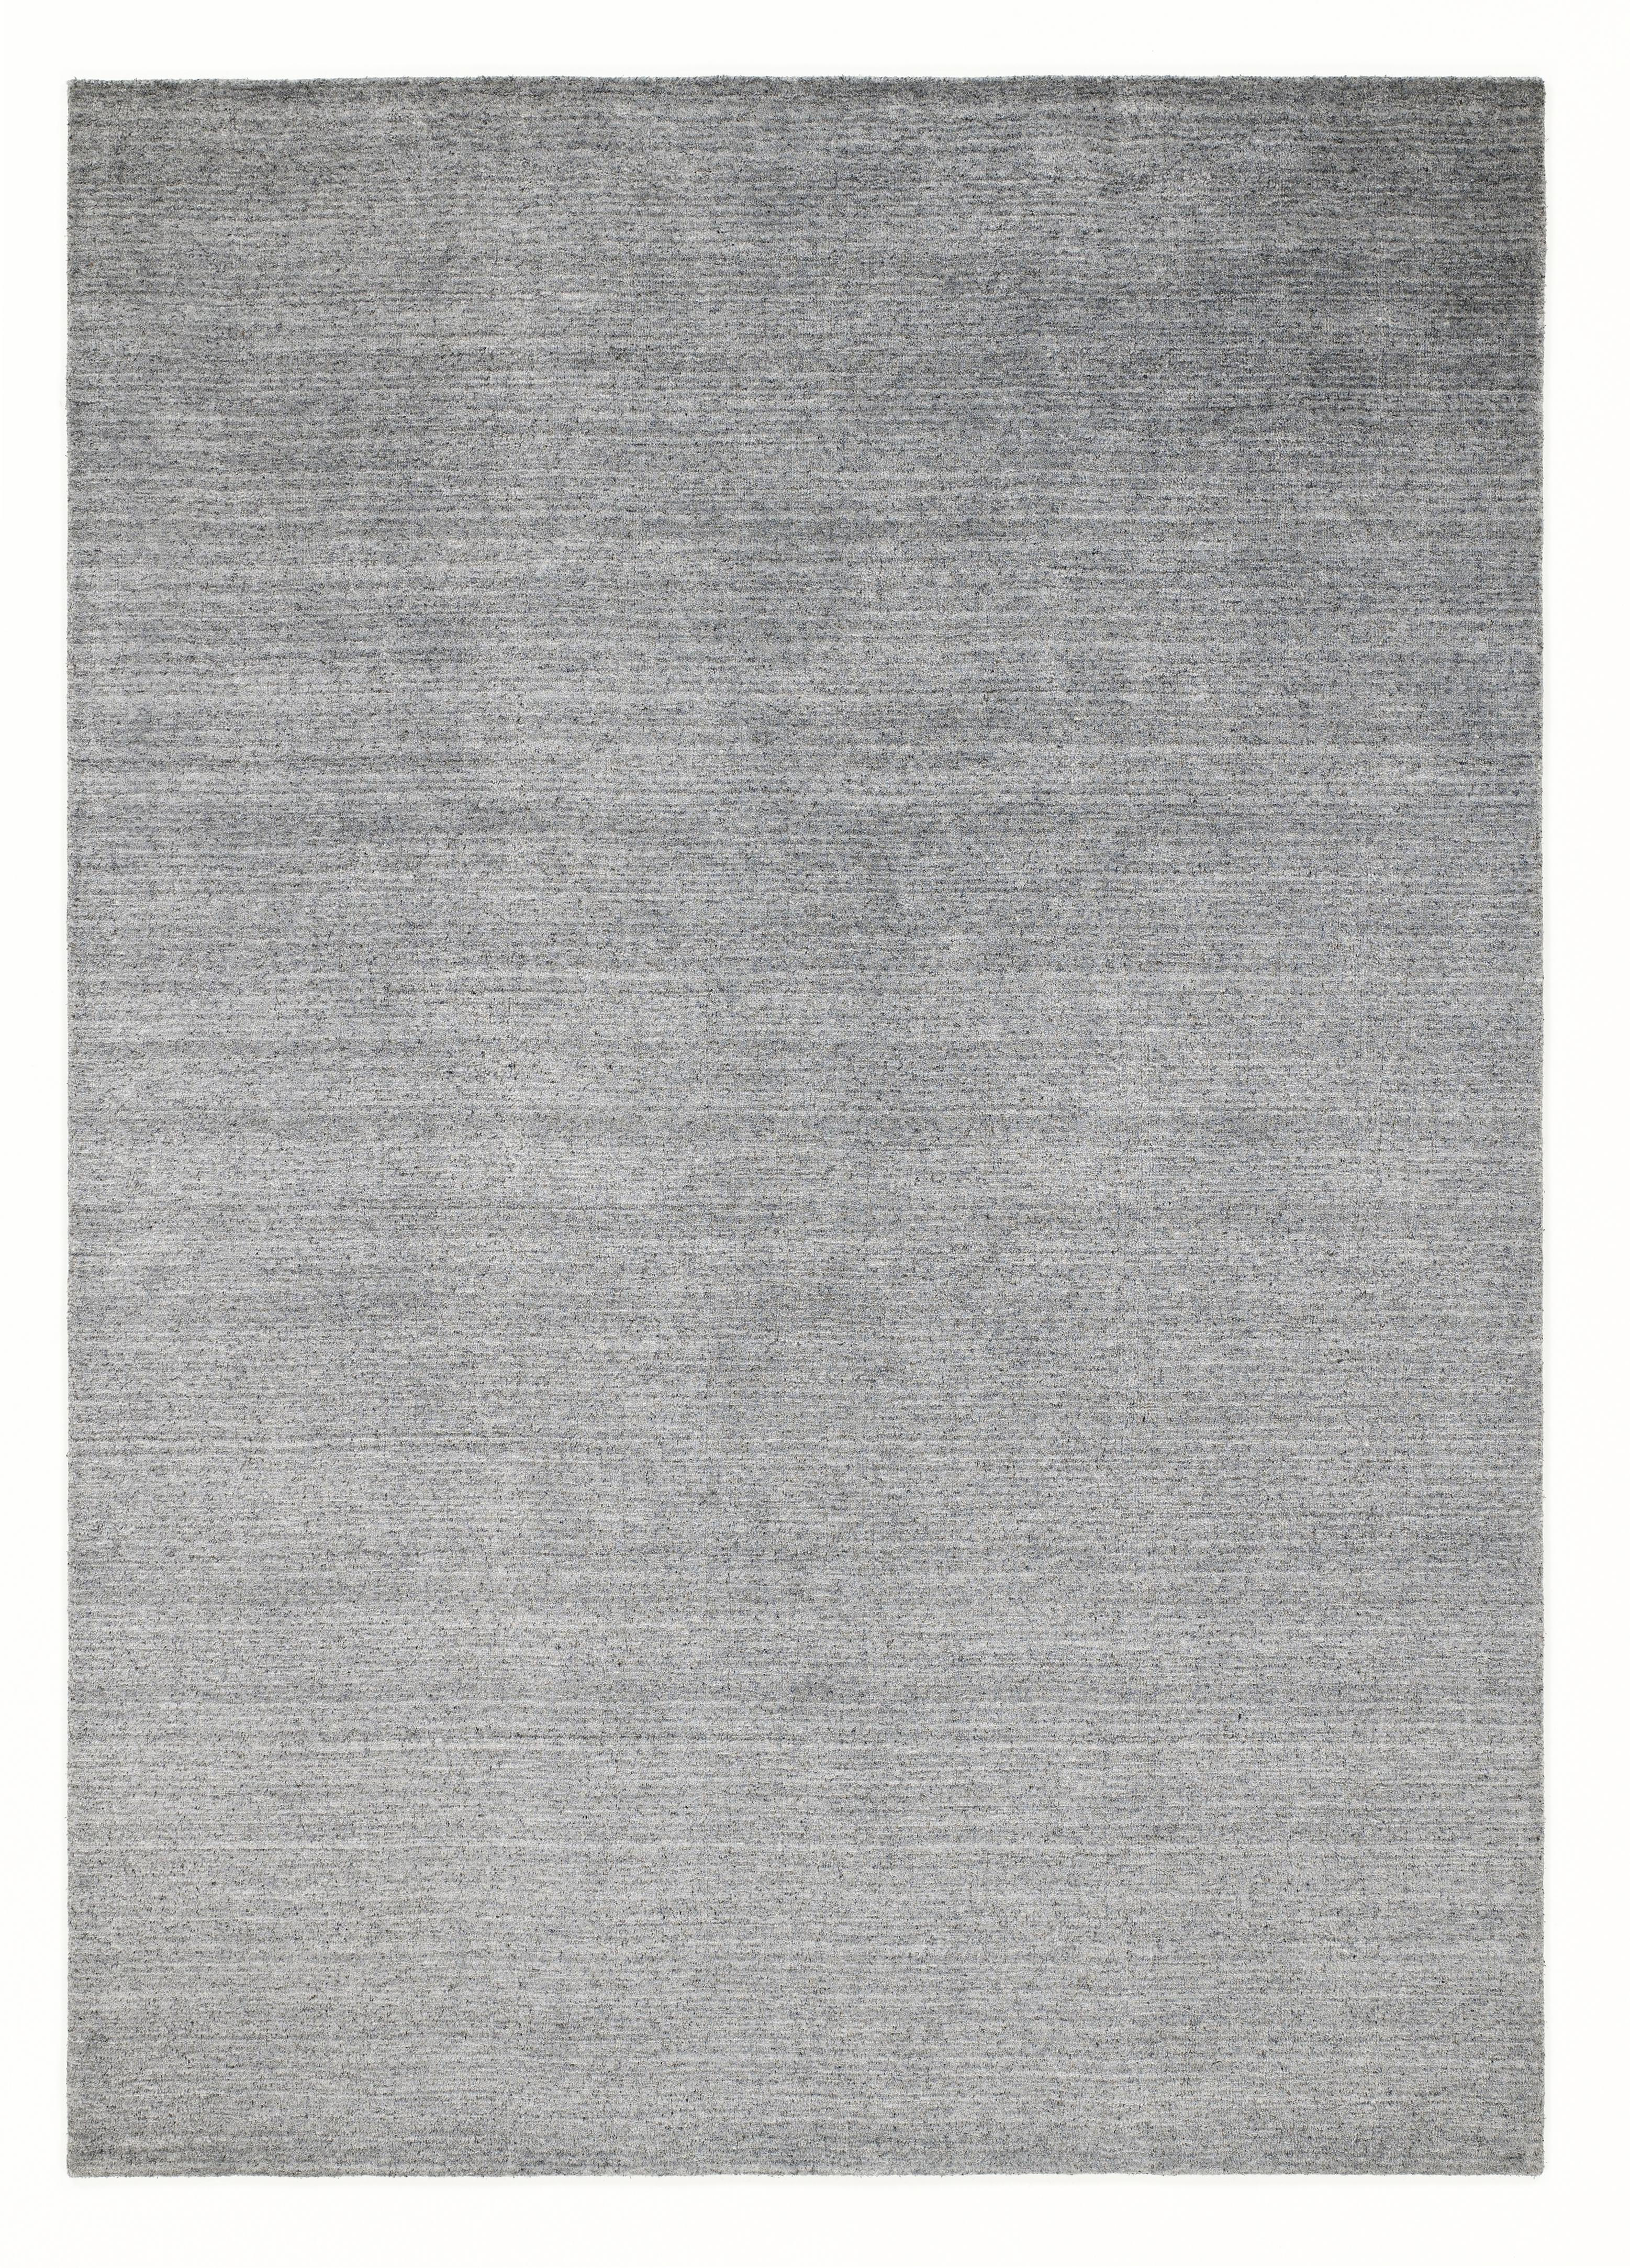 ORIENTTEPPICH 200/300 cm Malibu  - Silberfarben, KONVENTIONELL, Textil (200/300cm) - Musterring